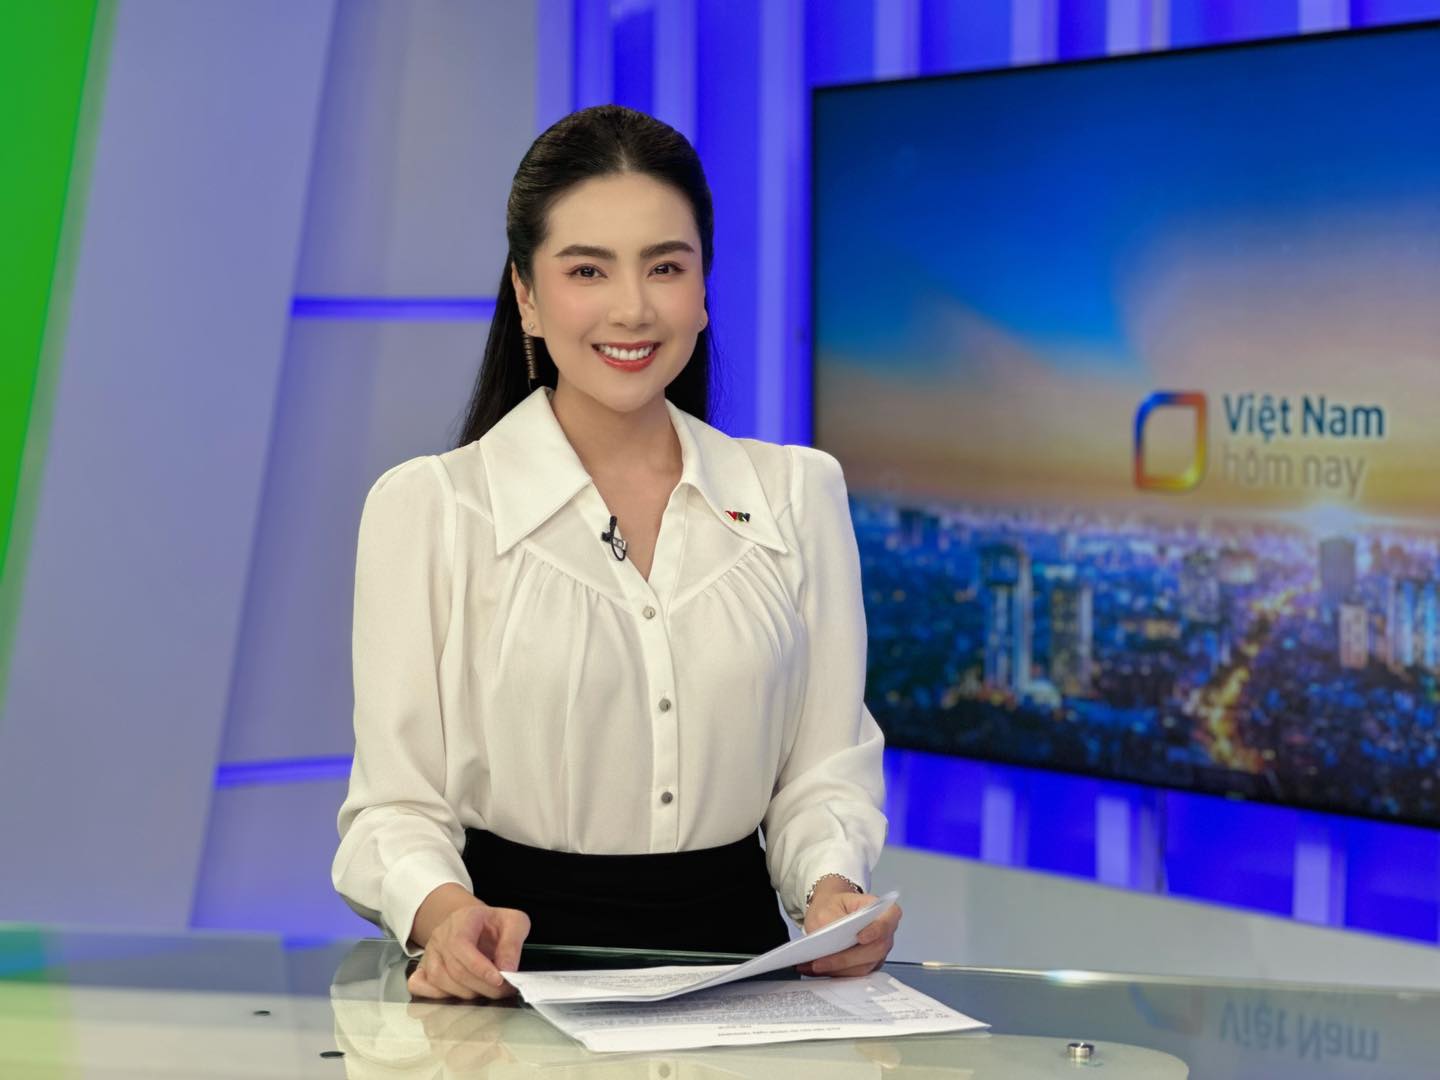 MC Mai Ngọc biến hóa với áo sơmi trắng khi lên hình | VTV.VN